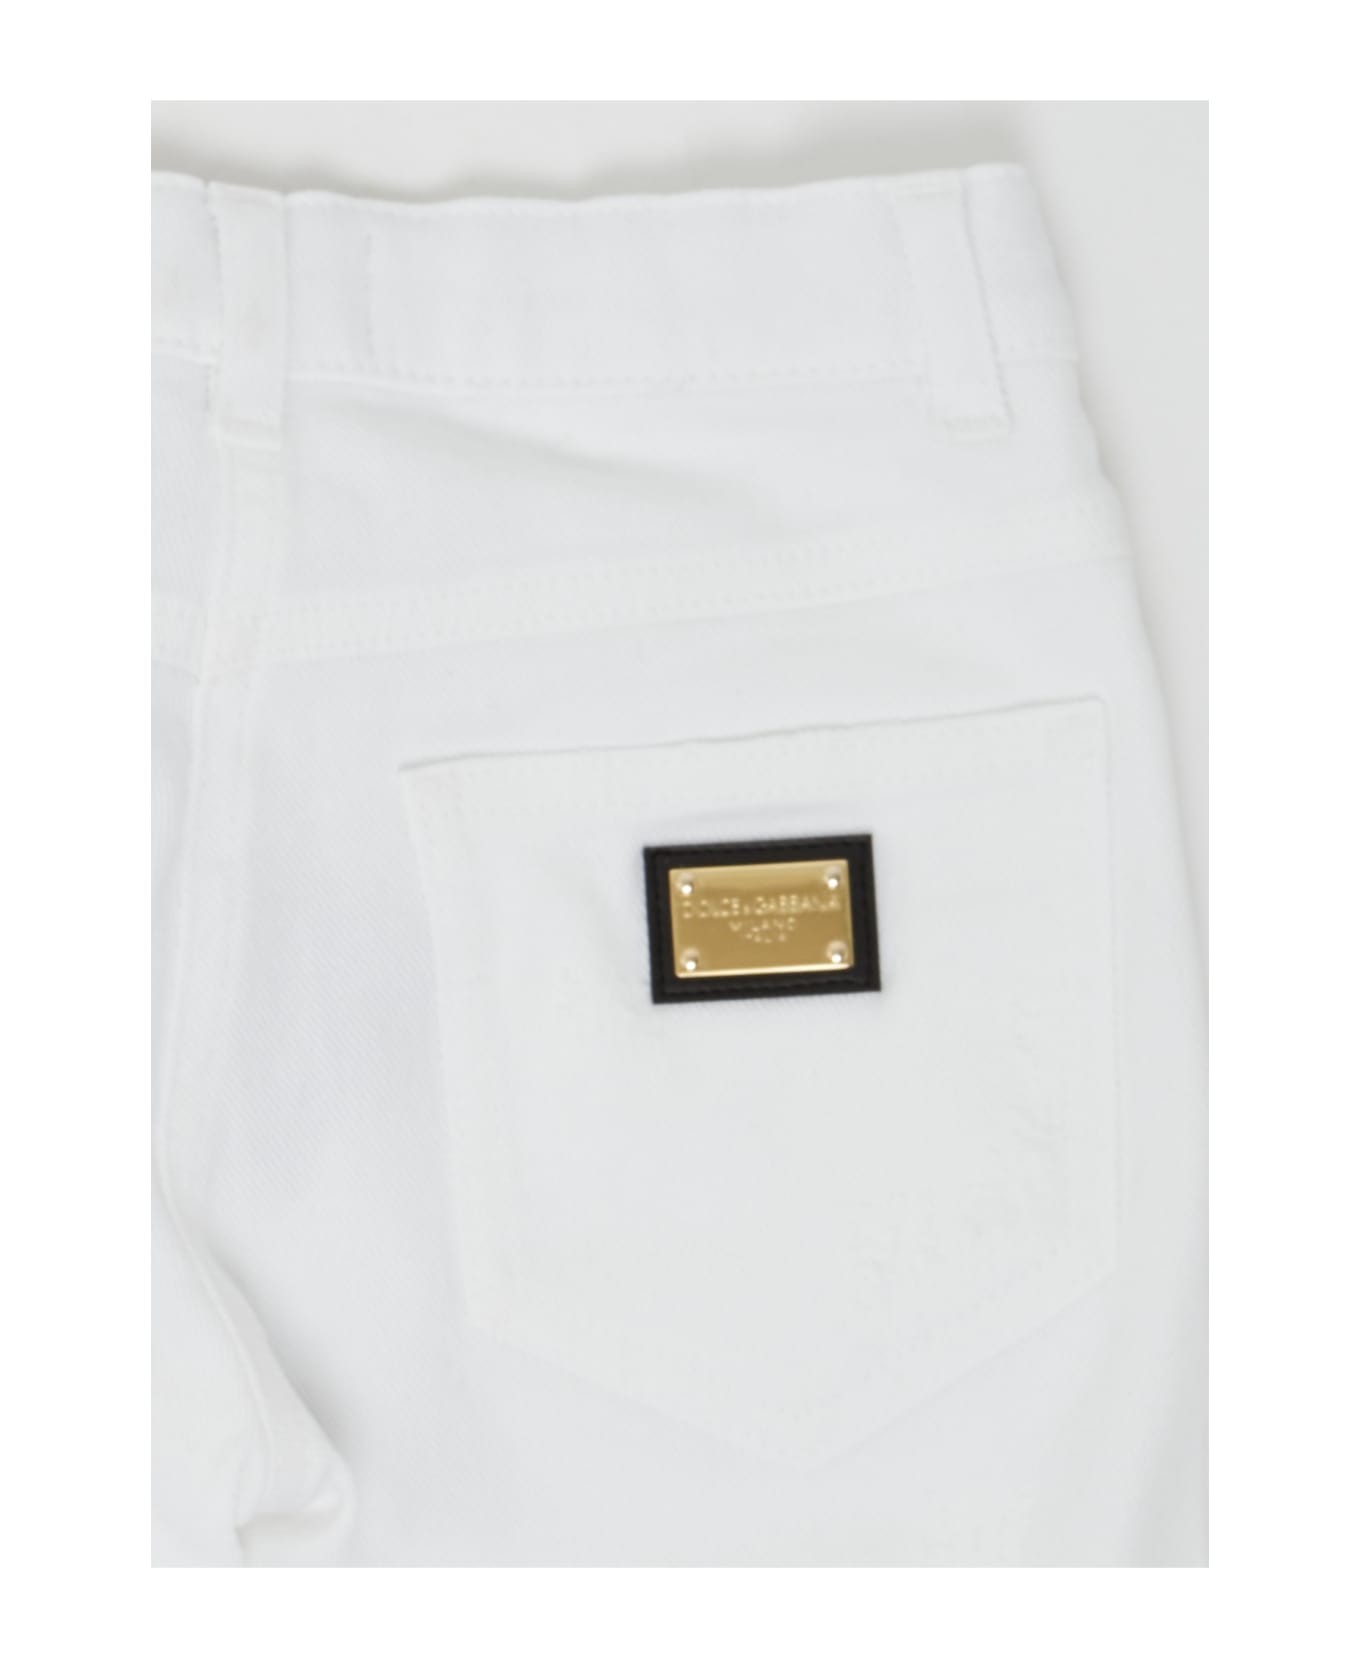 Dolce & Gabbana Trousers prostym Trousers prostym - BIANCO OTTICO